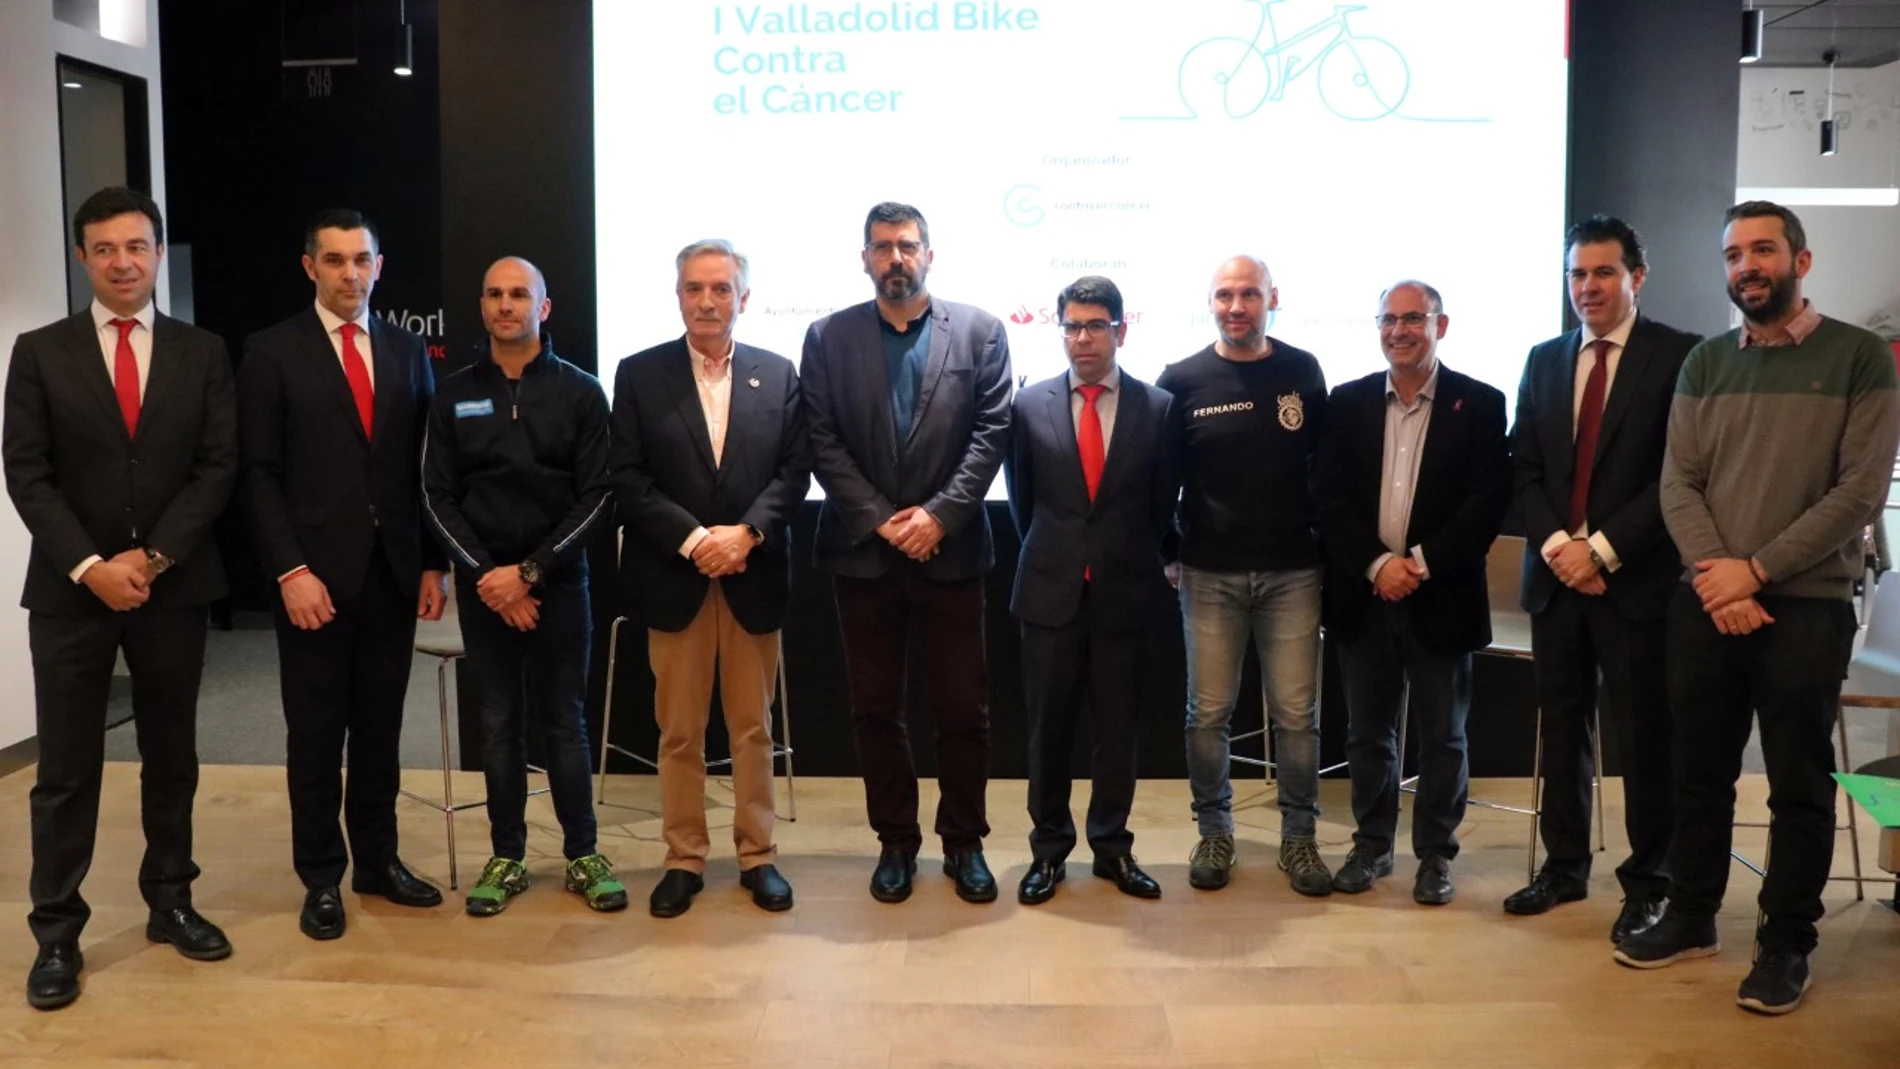 Presentación de la “I Valladolid Bike Contra el Cáncer”